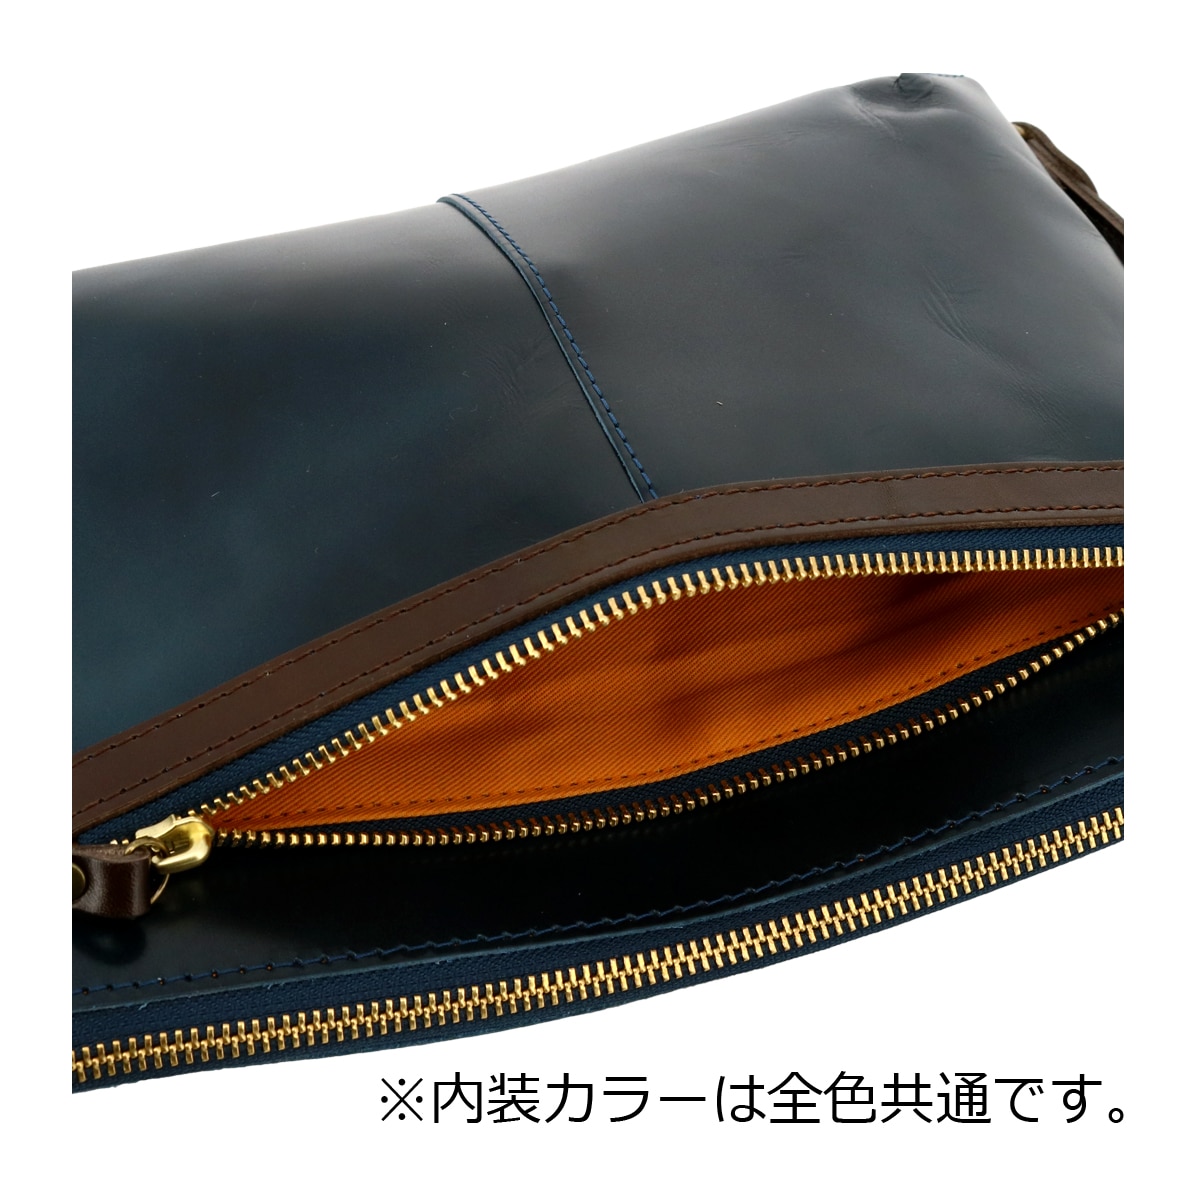 Zeha ショルダーバッグ A5 2WAY 本革 姫路レザー メンズ レディース 日本製 290-9804 brilliant ツェハ セカンドバッグ